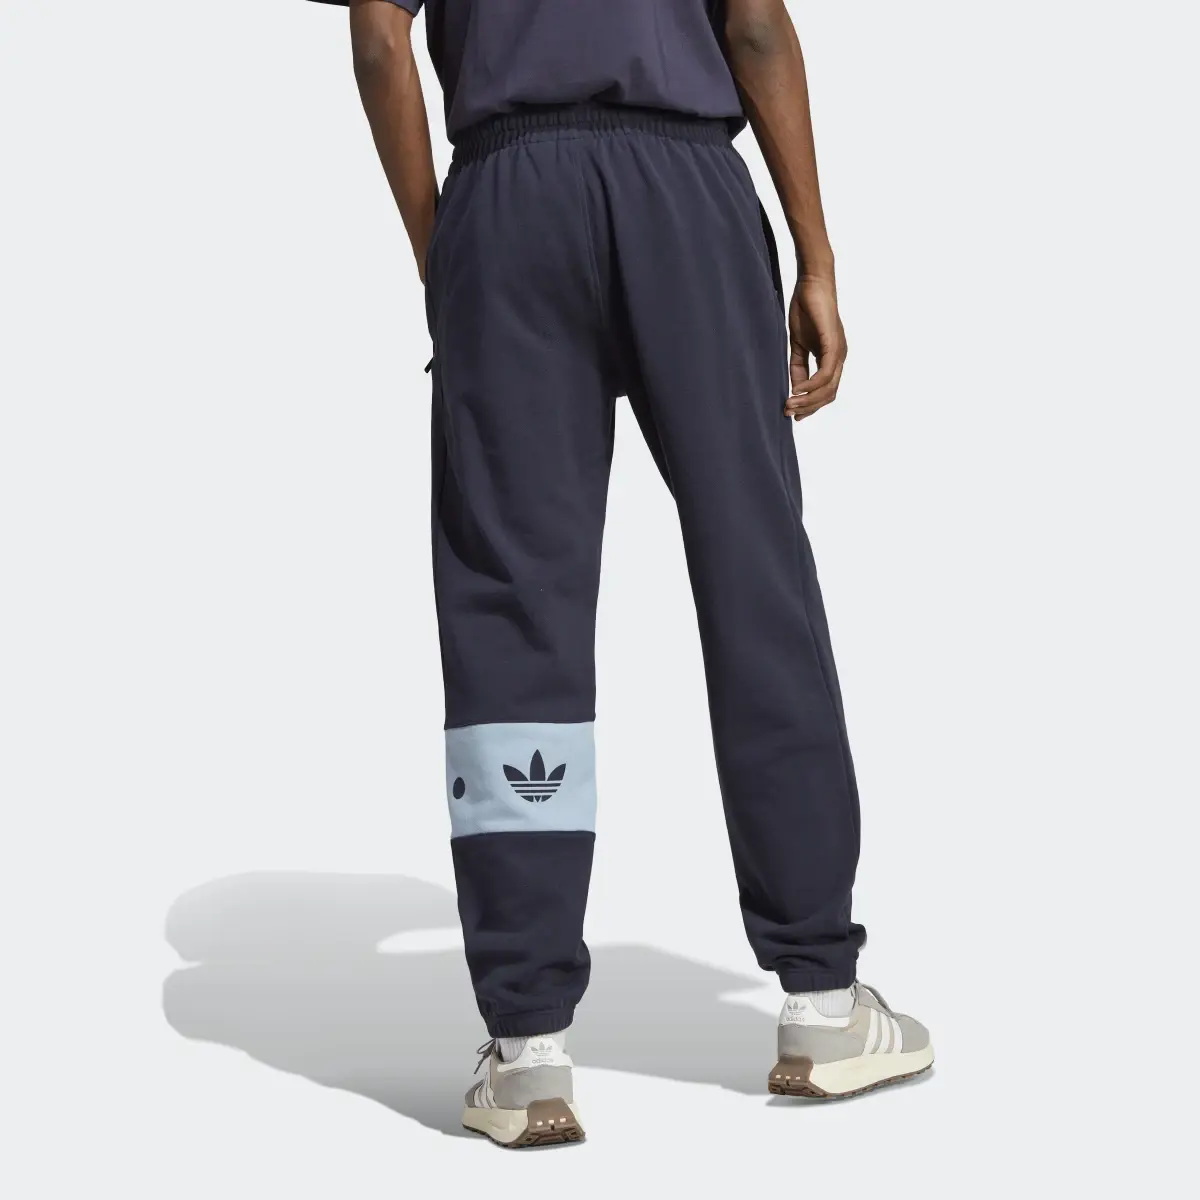 Adidas Sweat pants RIFTA City Boy. 3